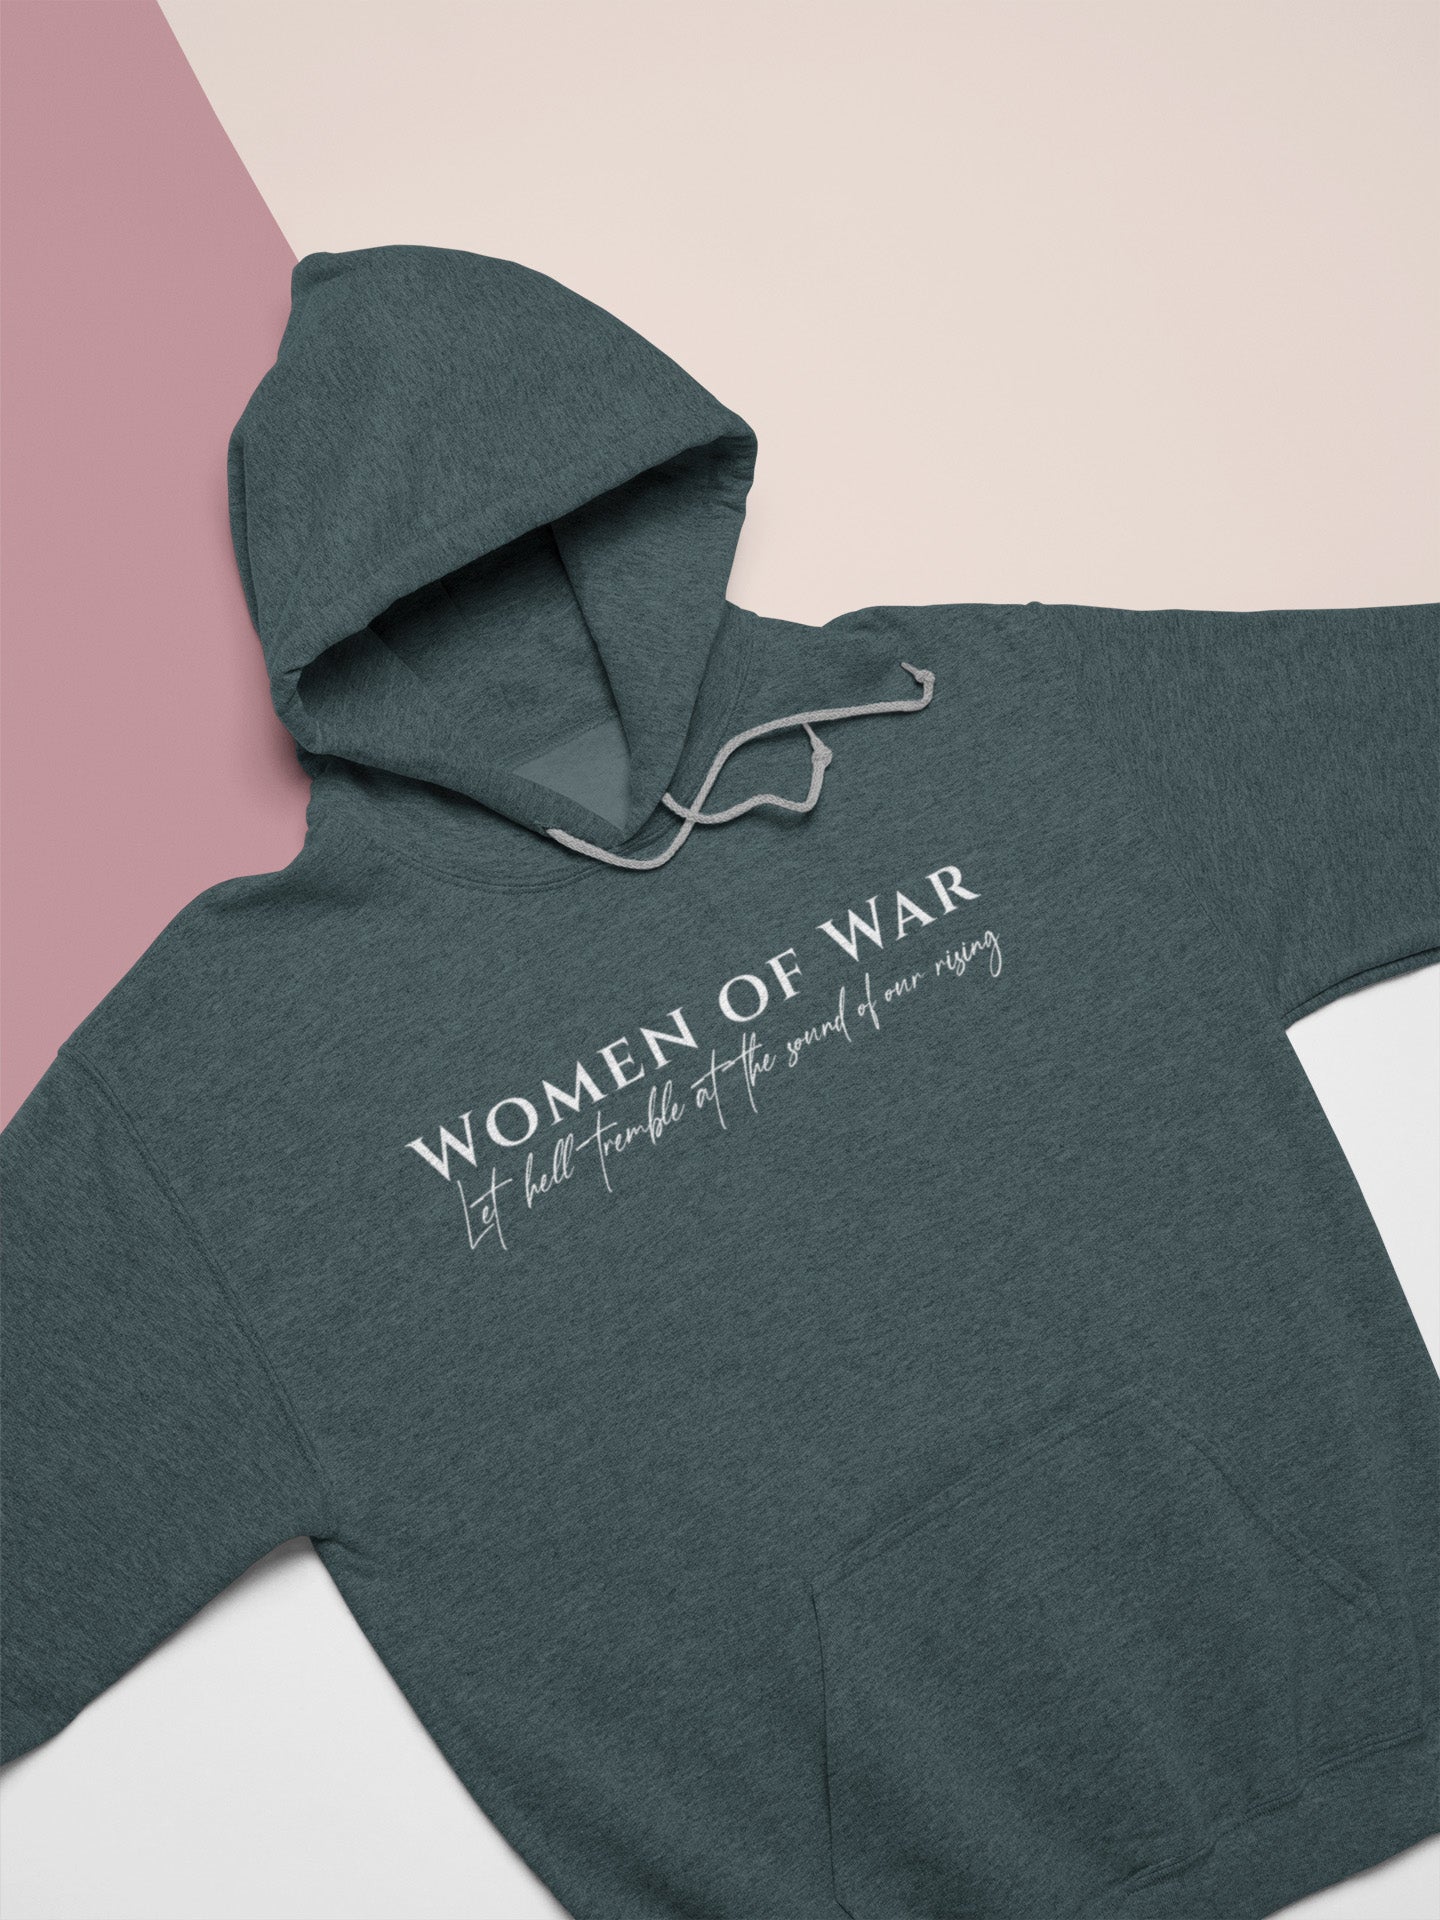 Women of War - Hoodie